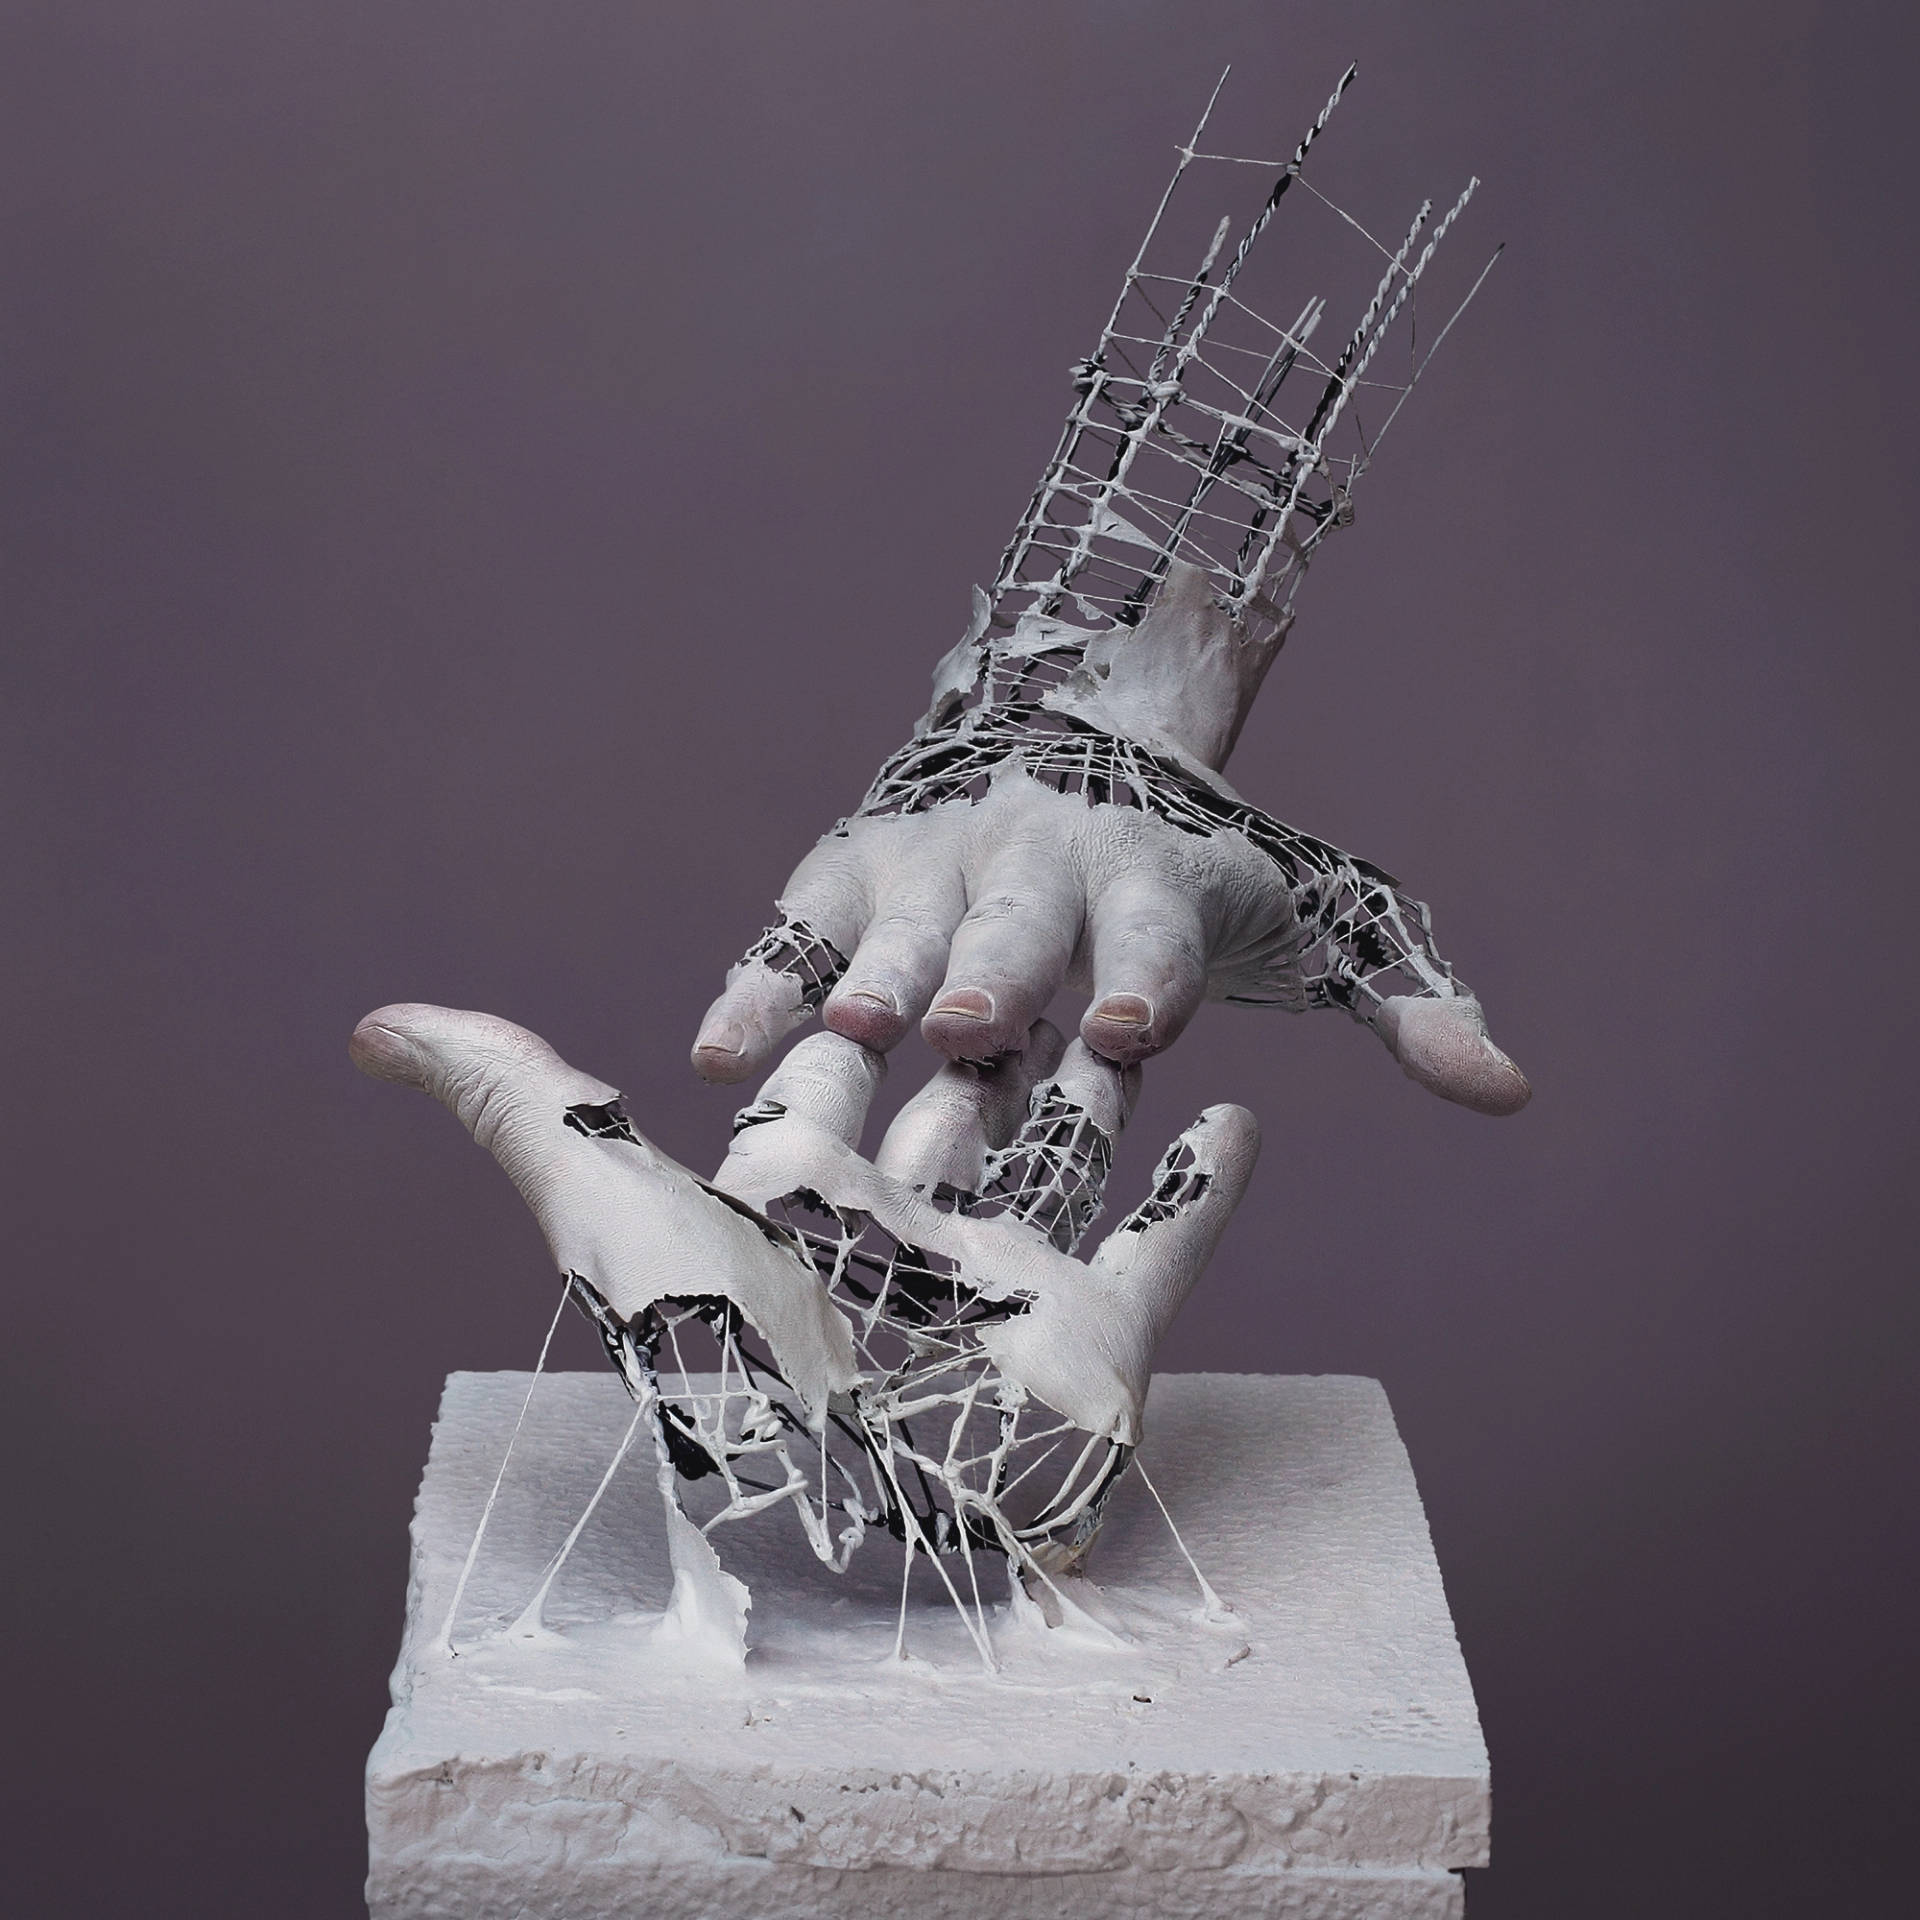 Wire Hand Sculpture